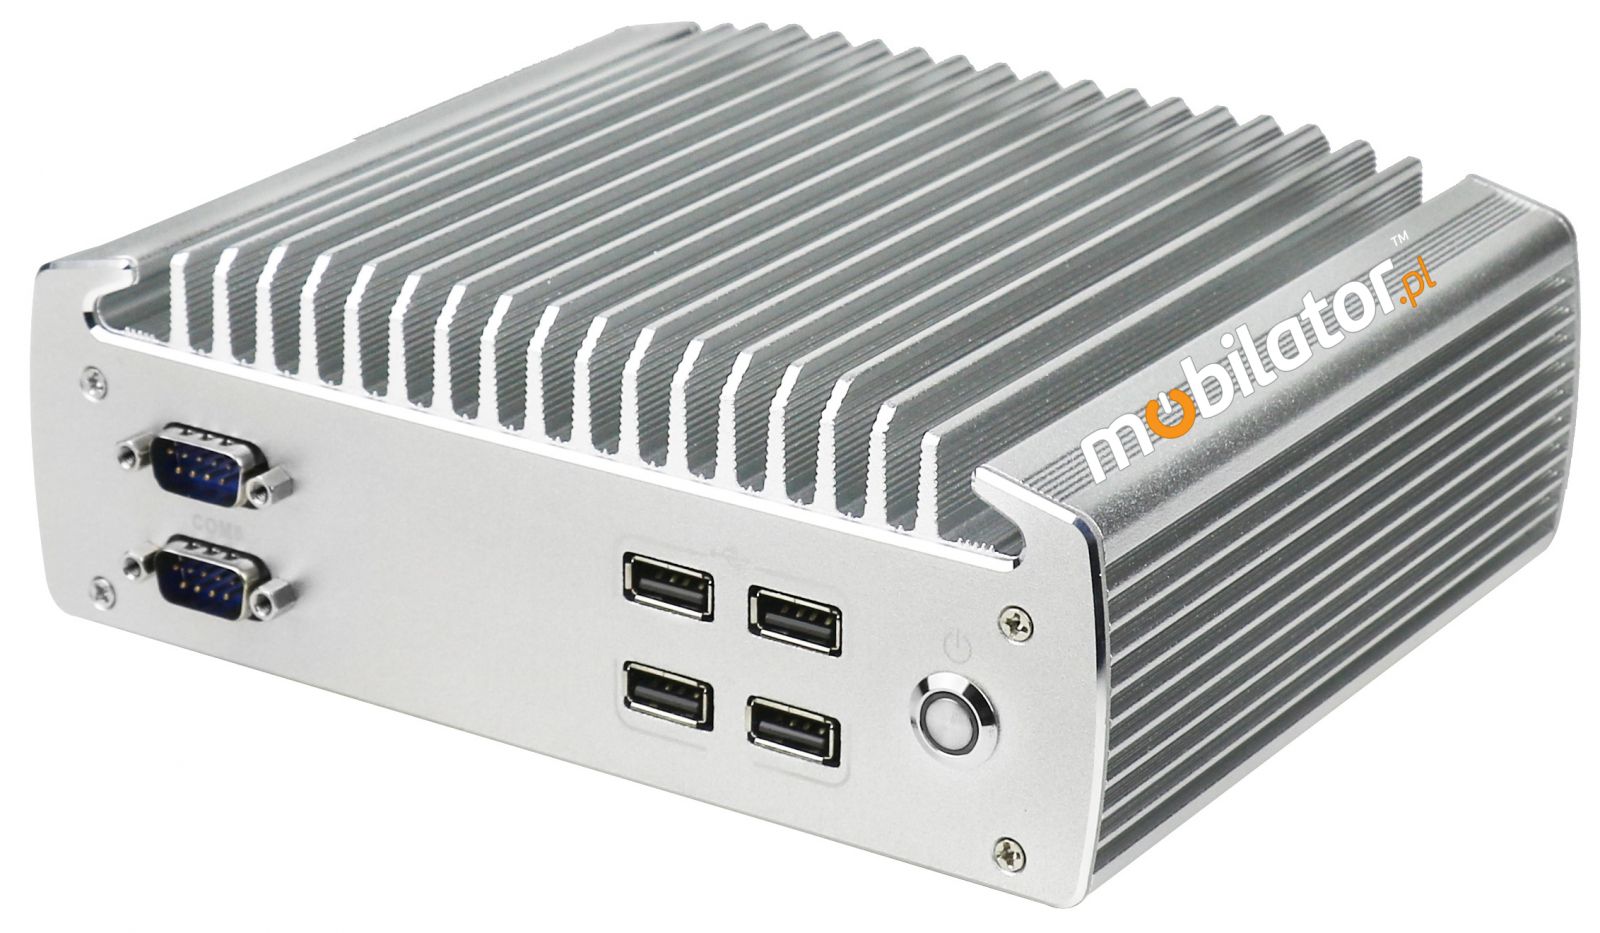 IBOX-101 Komputer przemysłowy  dla zastosowań magazynowych z modułem WiFi 3G 4G 6x COM